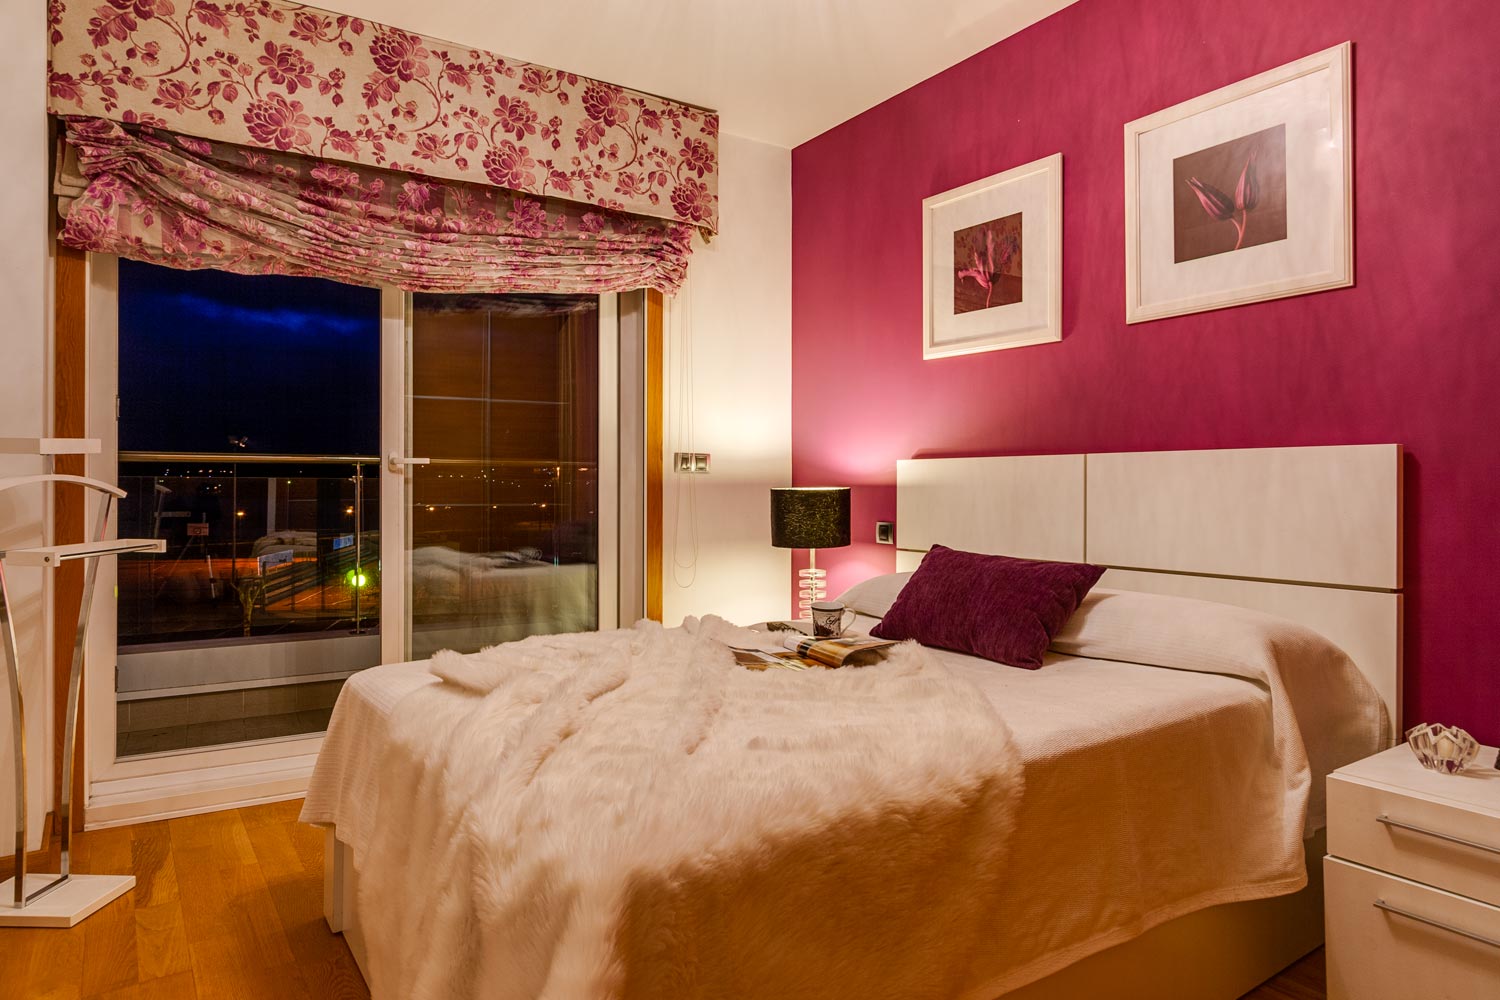 Dormitorio pintado en burdeos y crema, con cama y cabecero